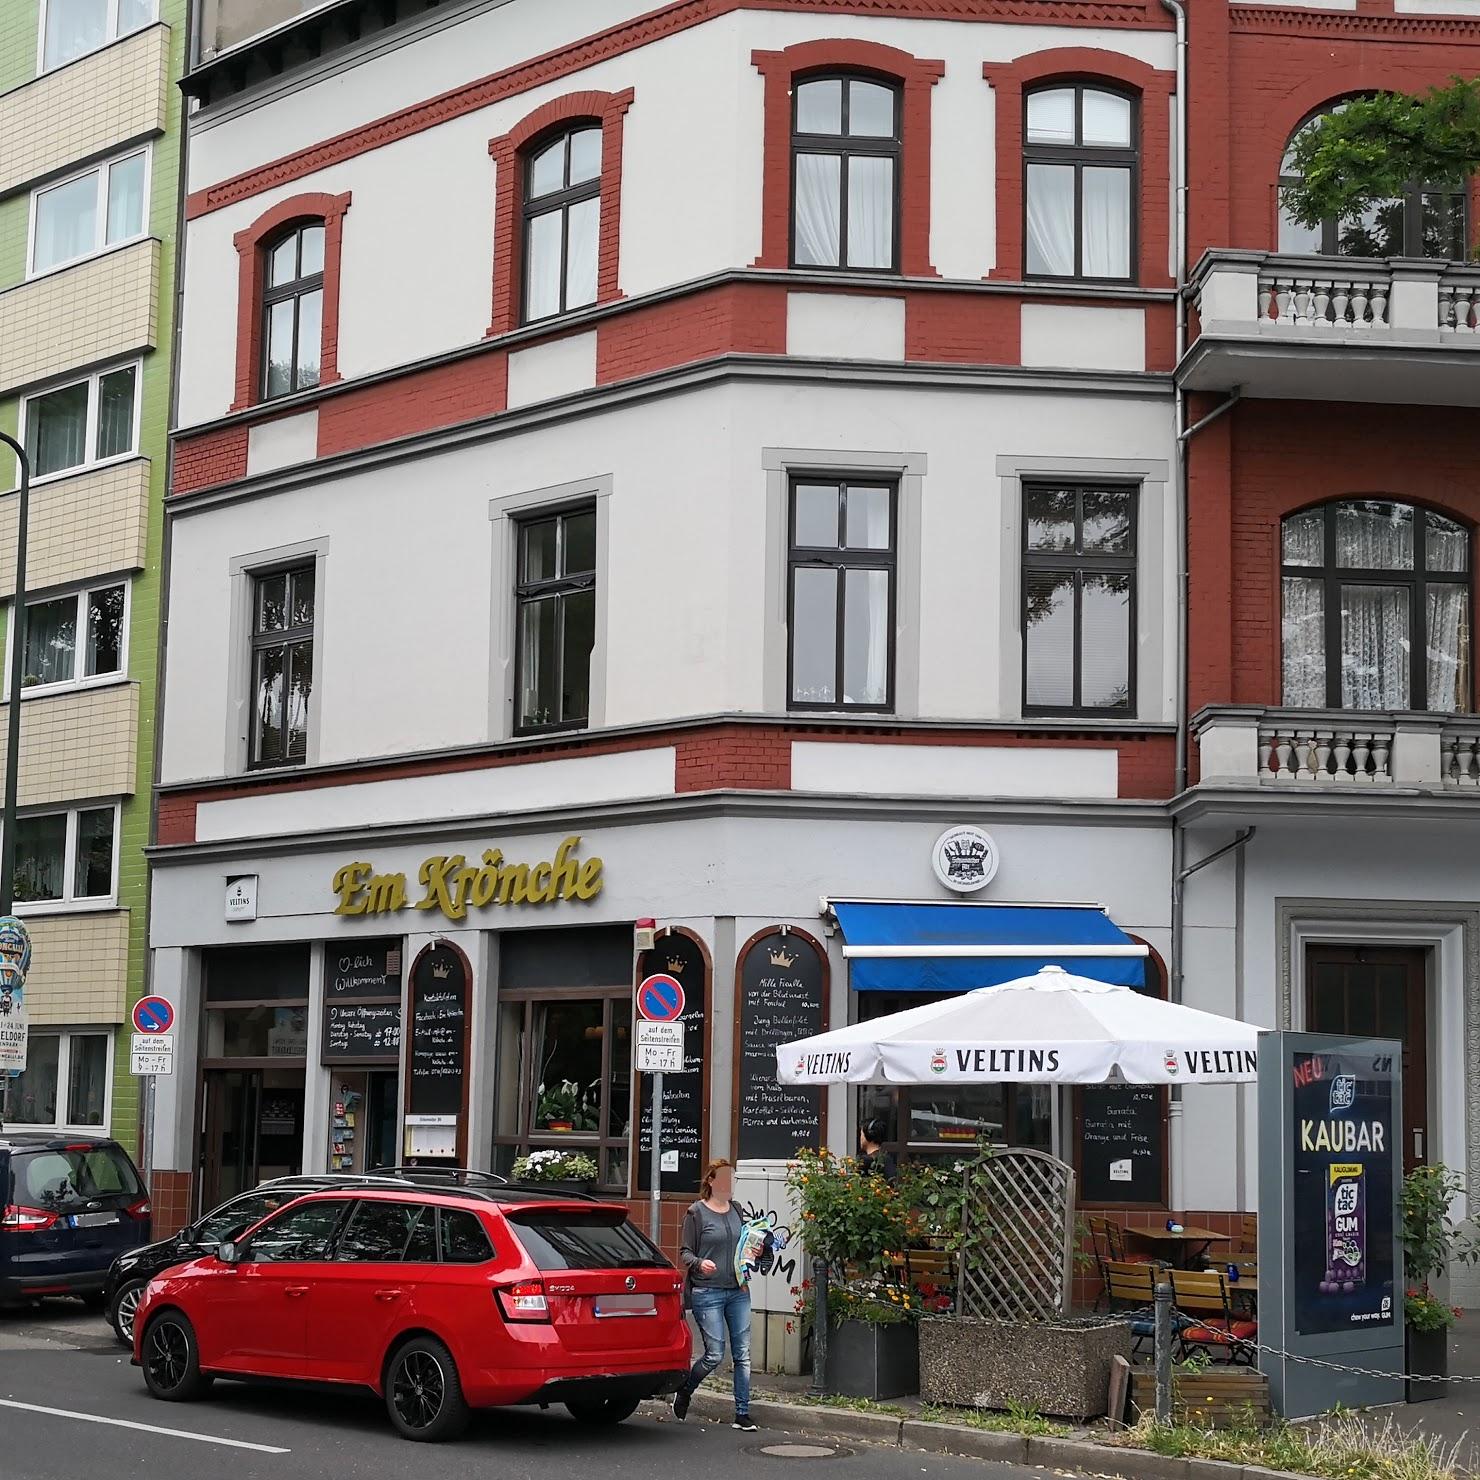 Restaurant "Em Krönche" in Düsseldorf